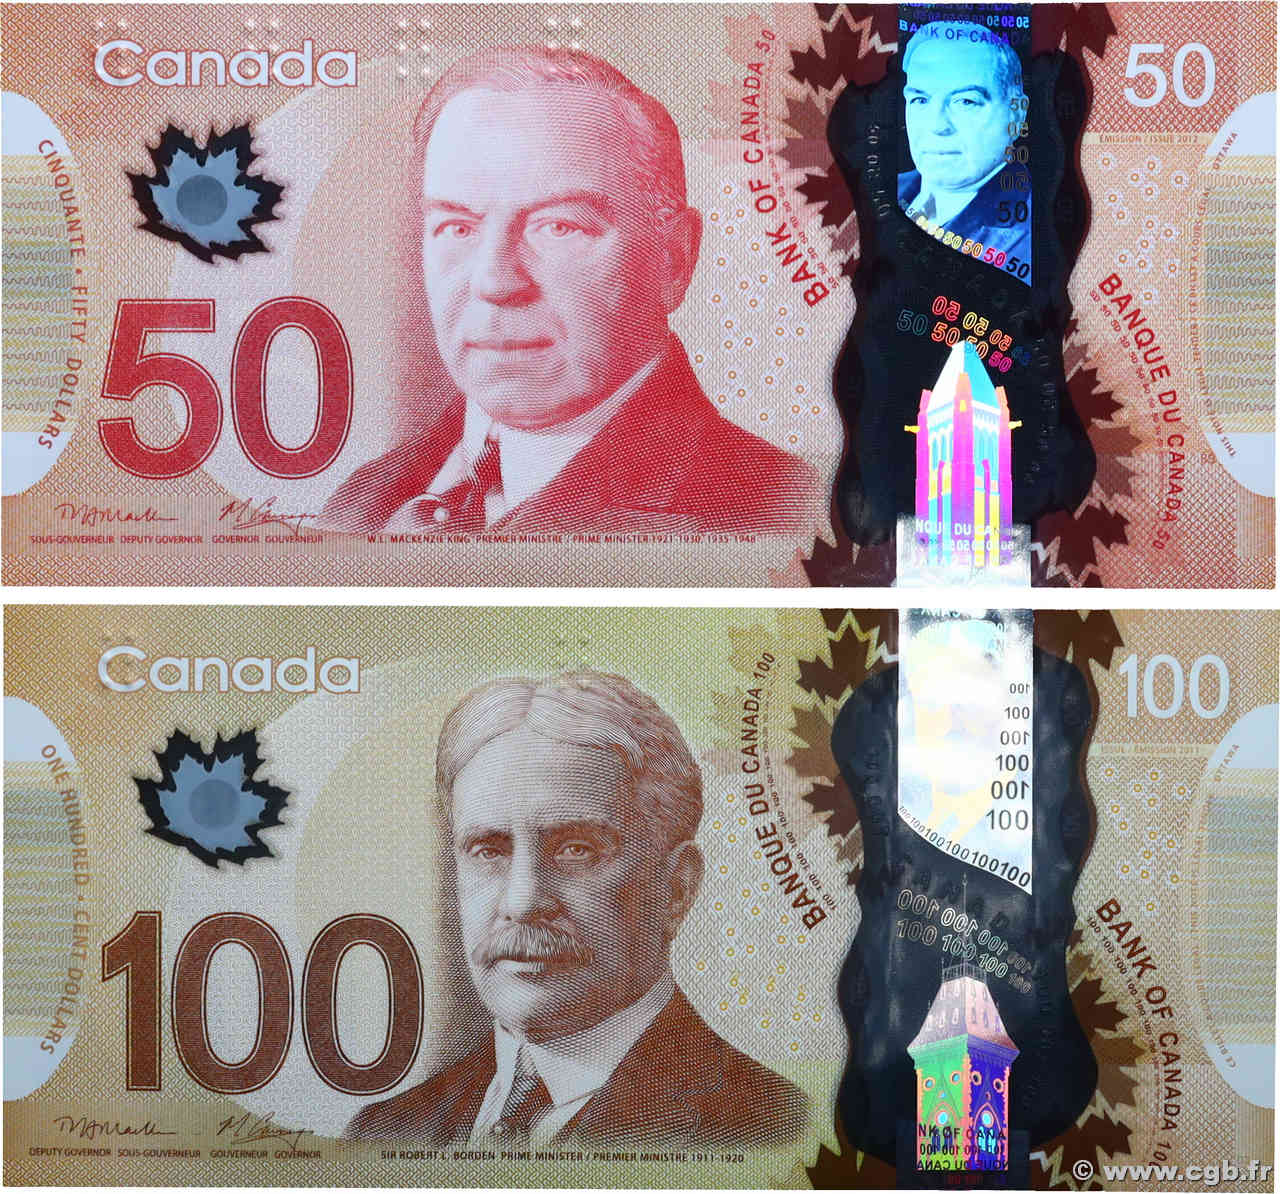 50 et 100 Dollars Lot CANADA  2011 P.109a et P.110a FDC